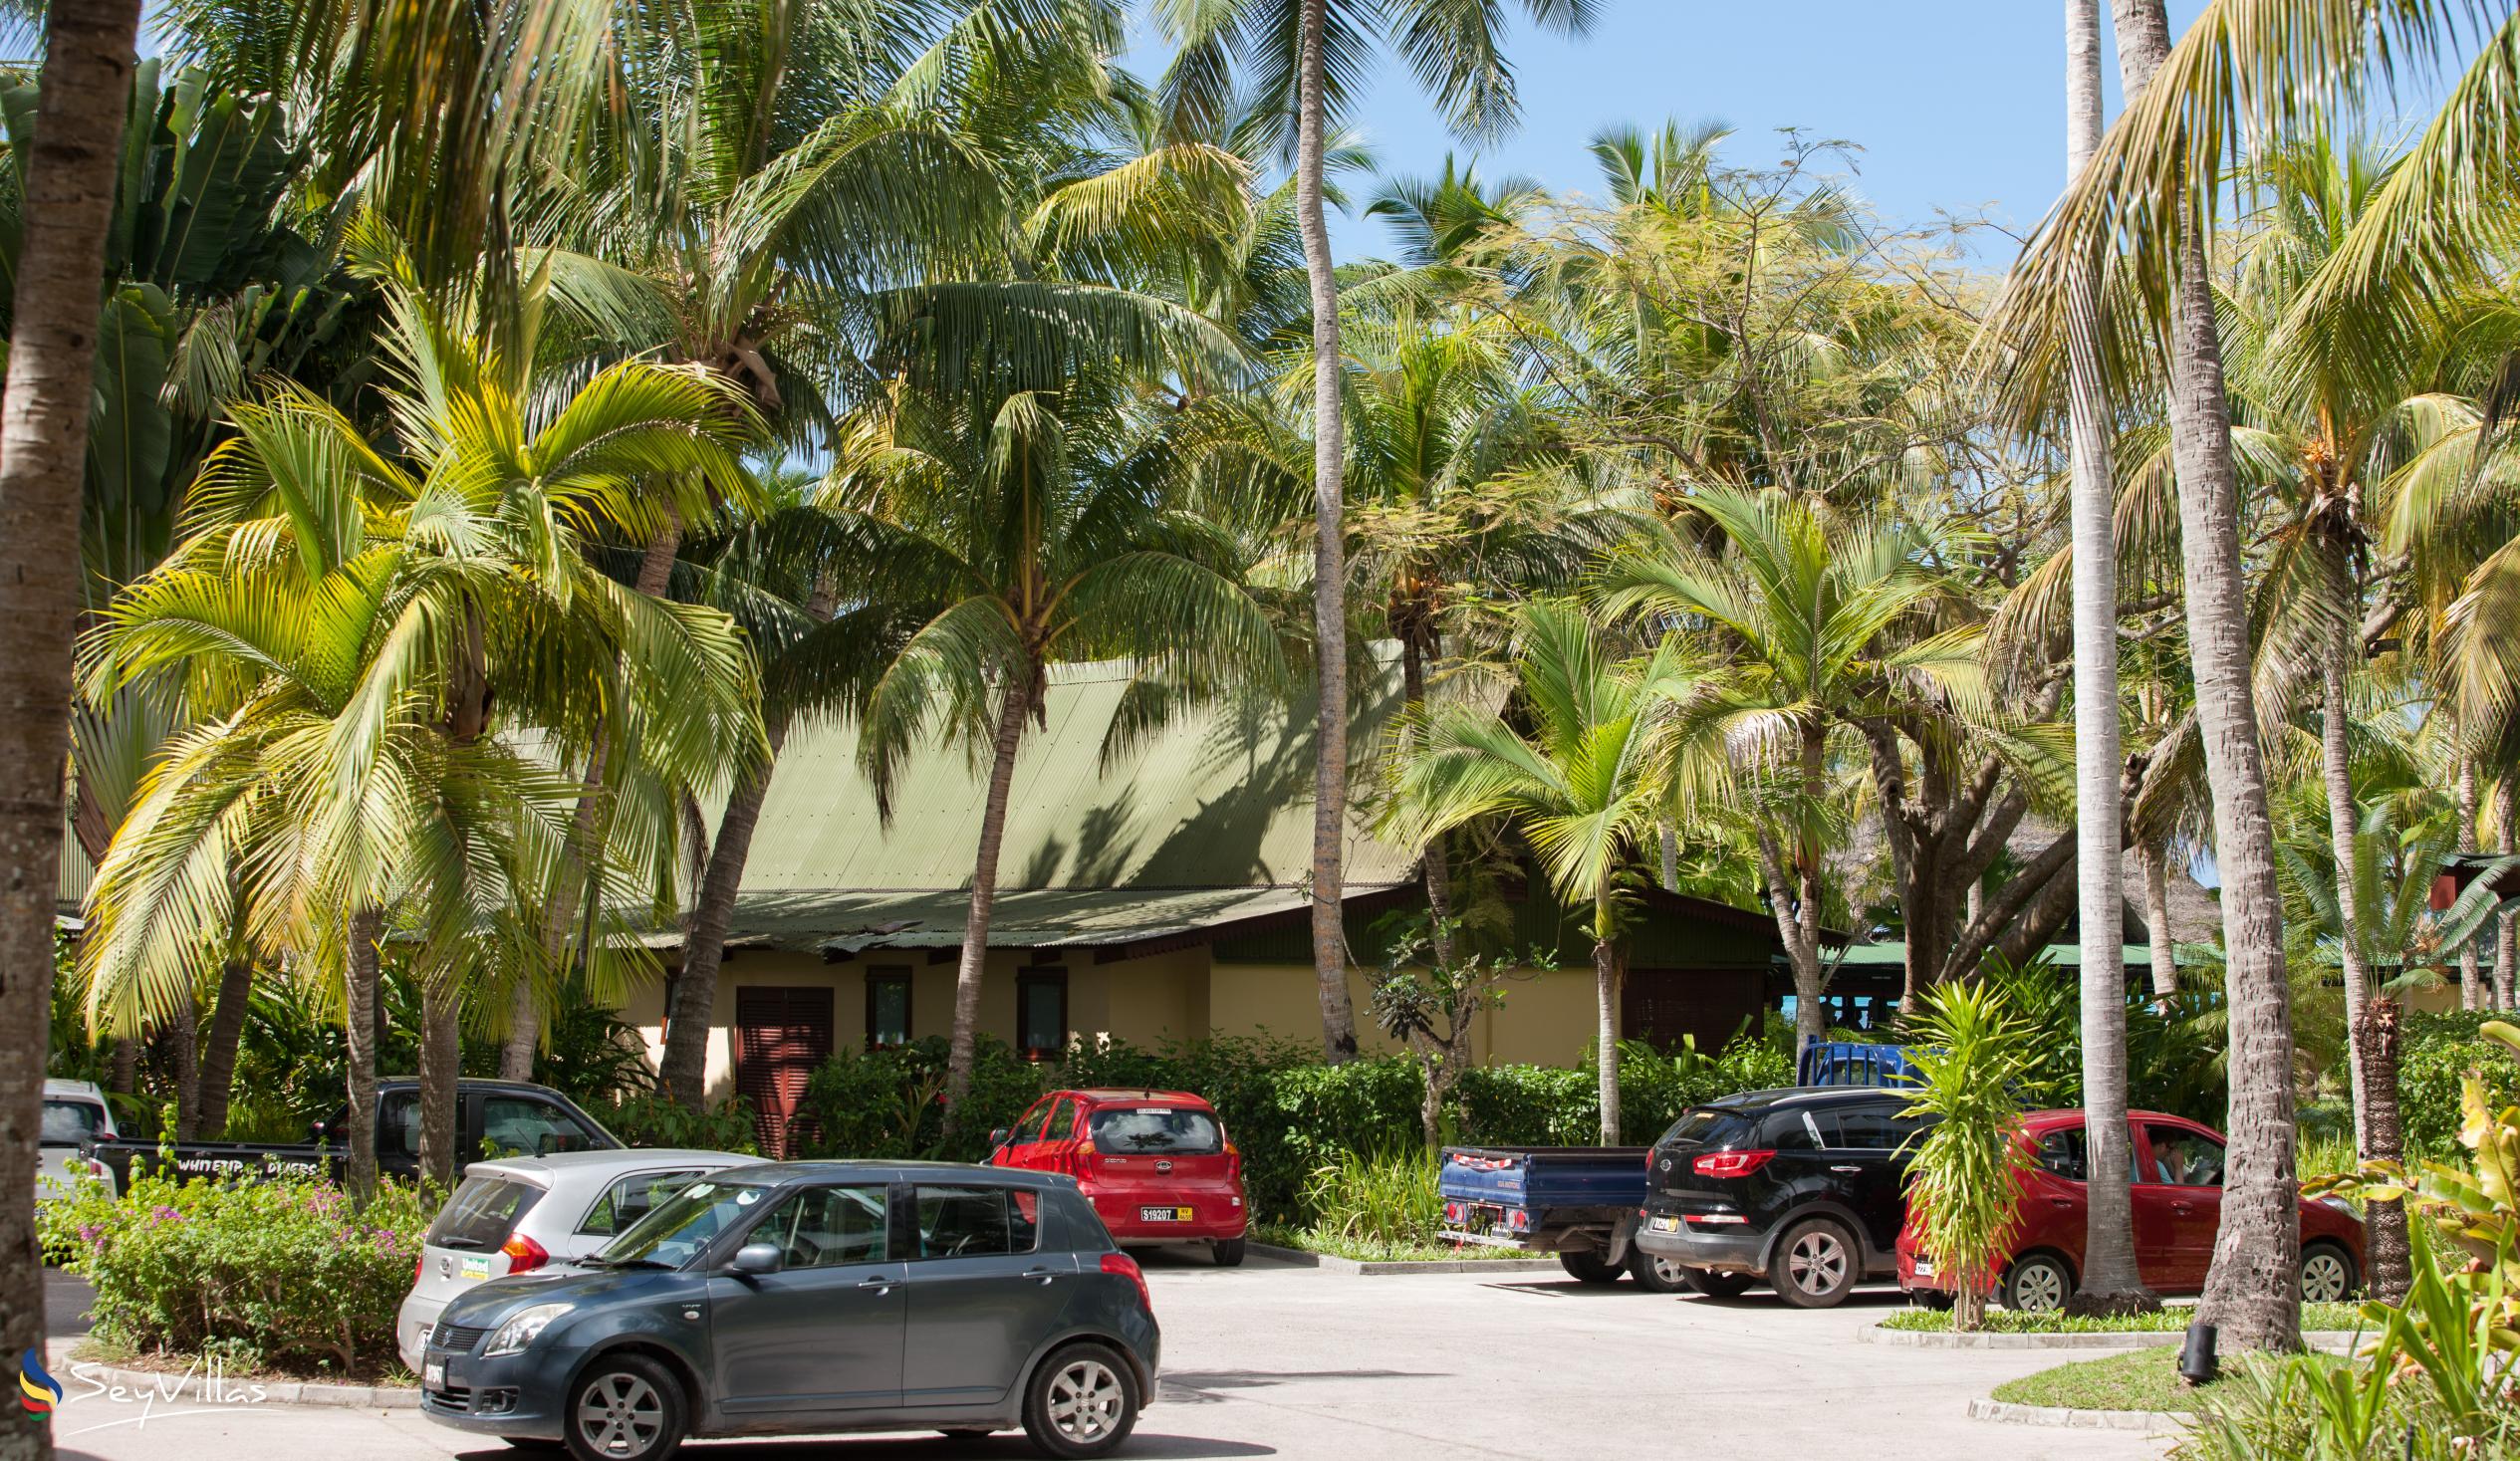 Photo 79: Paradise Sun Hotel - Outdoor area - Praslin (Seychelles)